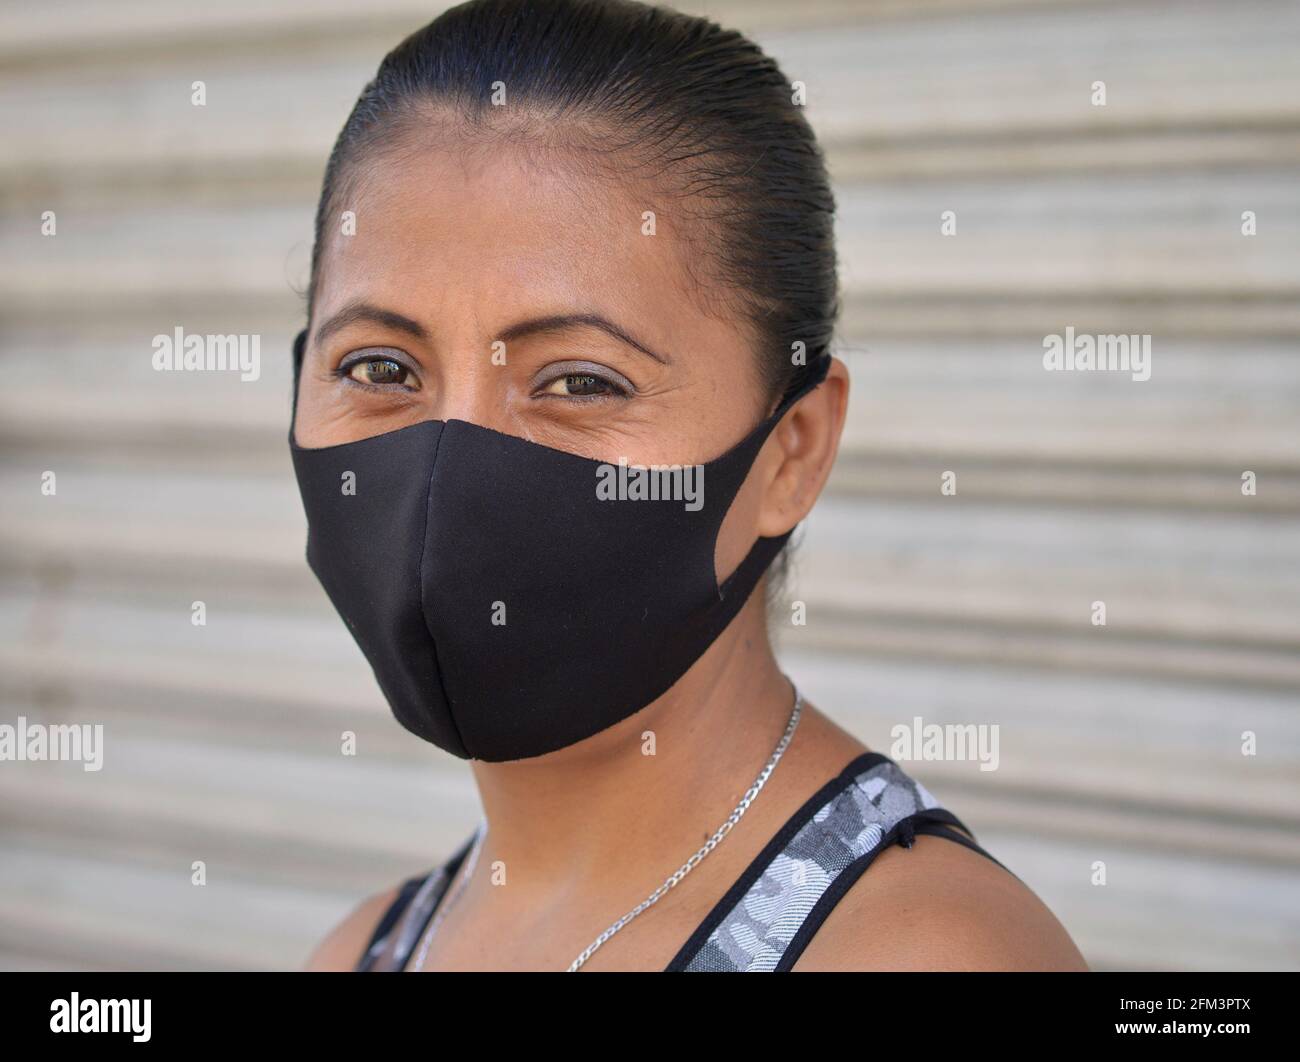 La donna messicana di mezza età con gli occhi marroni, indossa una maschera facciale non medica in tessuto nero durante la pandemia globale di coronavirus in corso. Foto Stock